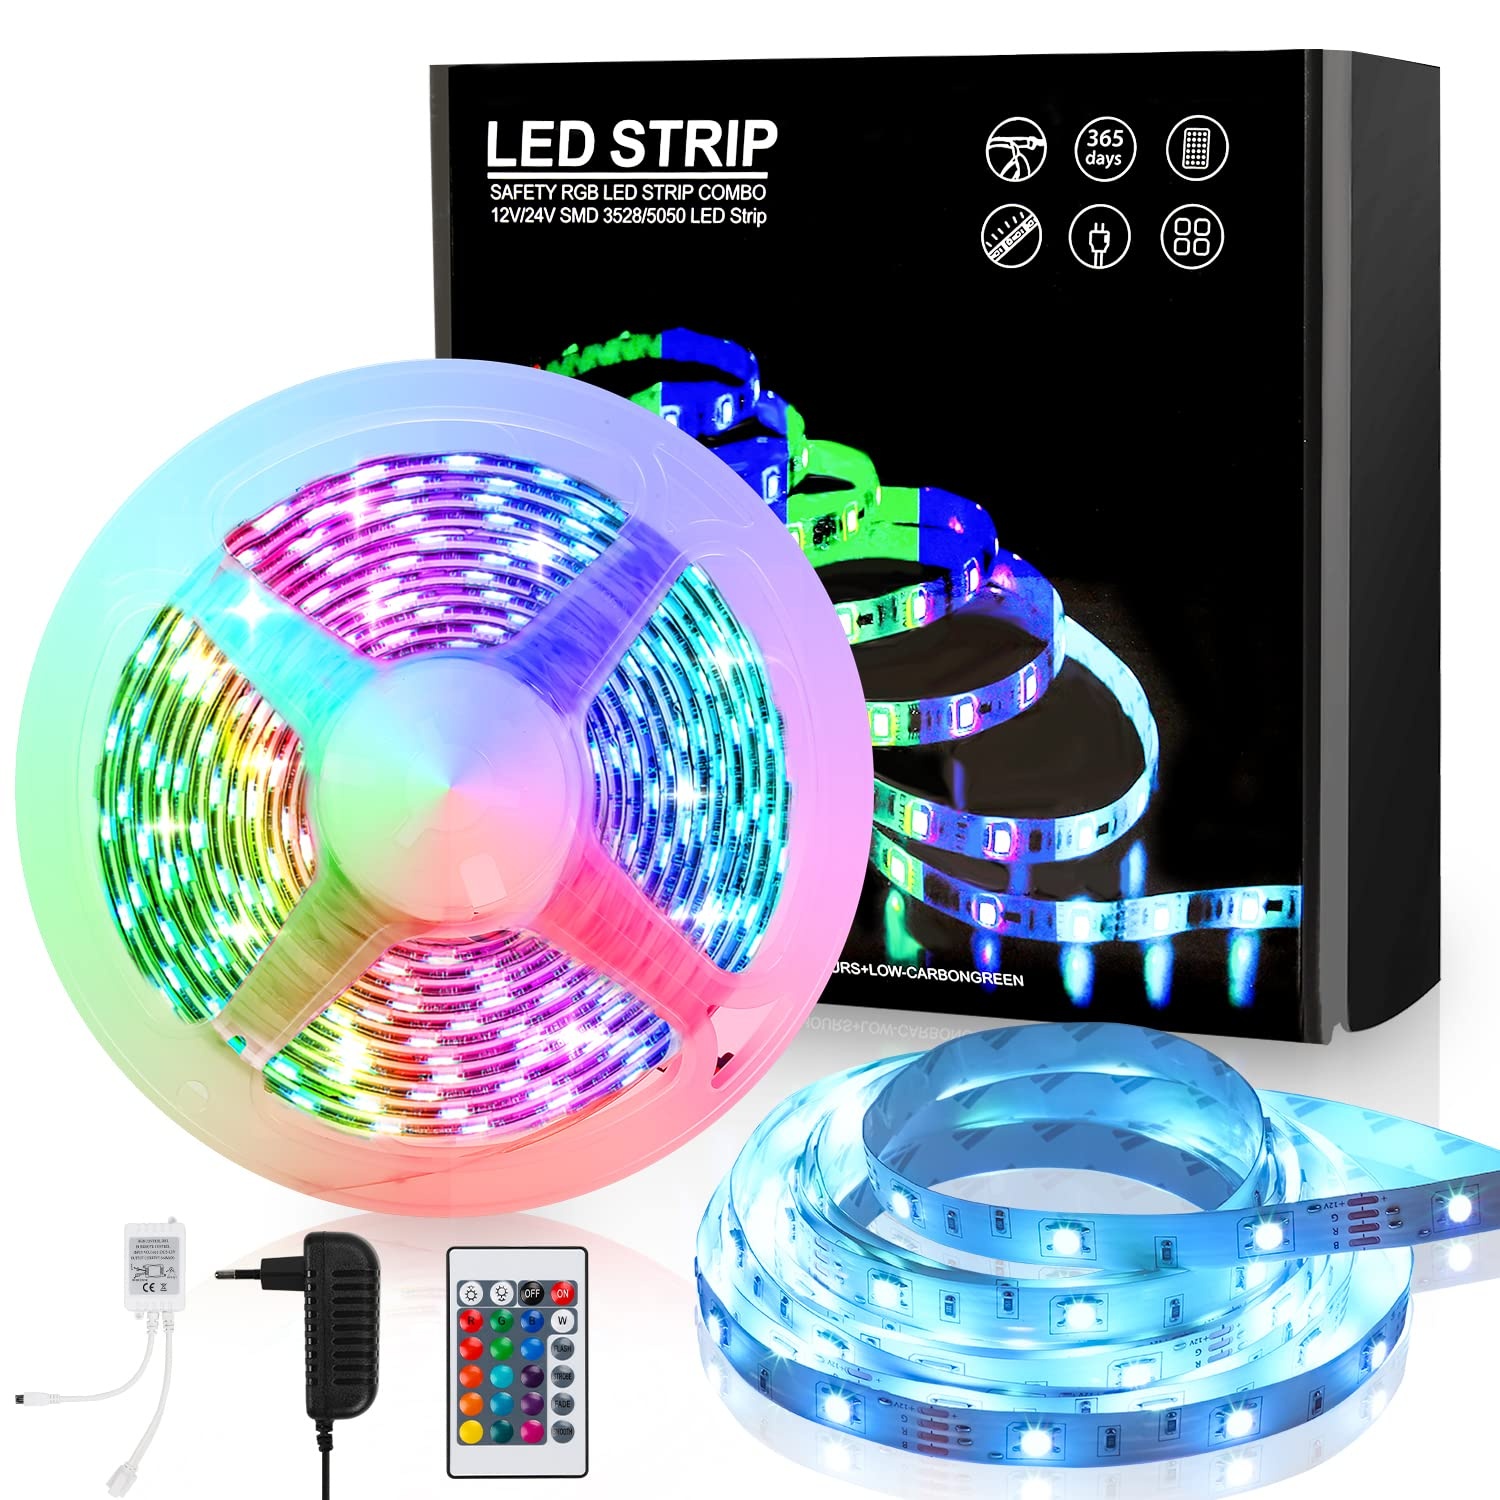 Jopassy LED Streifen 10M,RGB LED Strip Selbstklebend SMD 5050,Farbwechsel led band mit Fernbedienung rgb LED lichtband Leiste für die Beleuchtung von Haus,Party,Küche,TV Hintergrundbeleuchtung